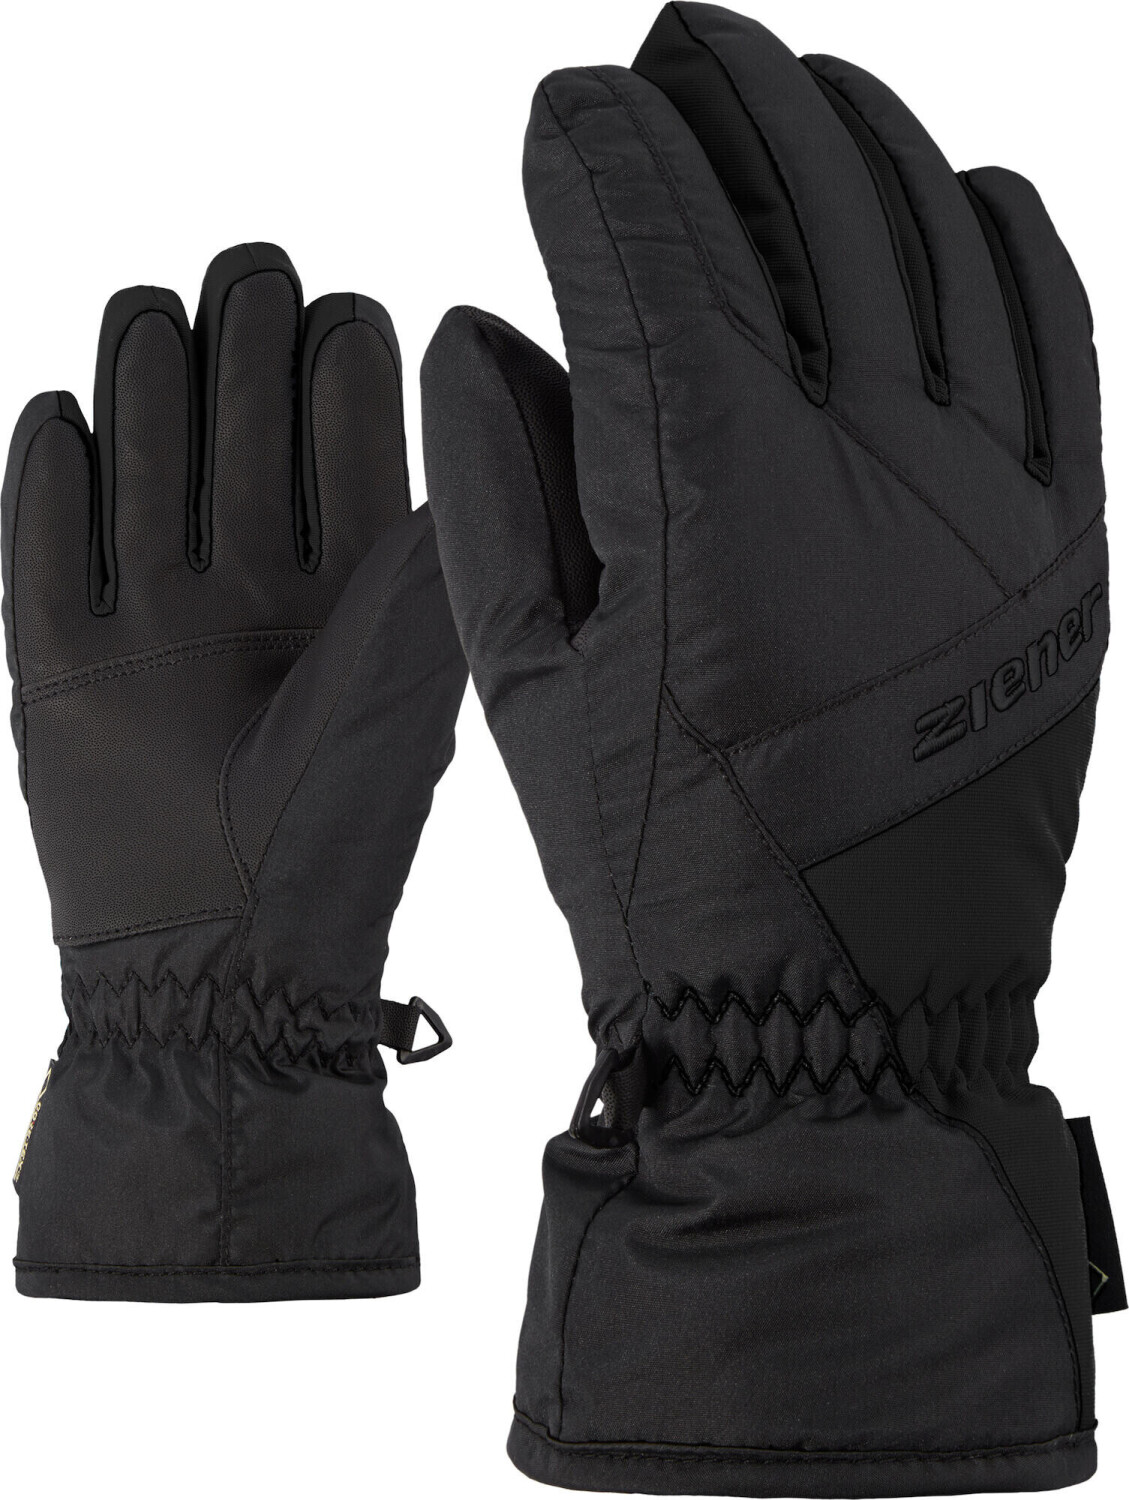 Ziener Linard GTX (801908) 24,55 € bei Glove Junior black ab | Preisvergleich